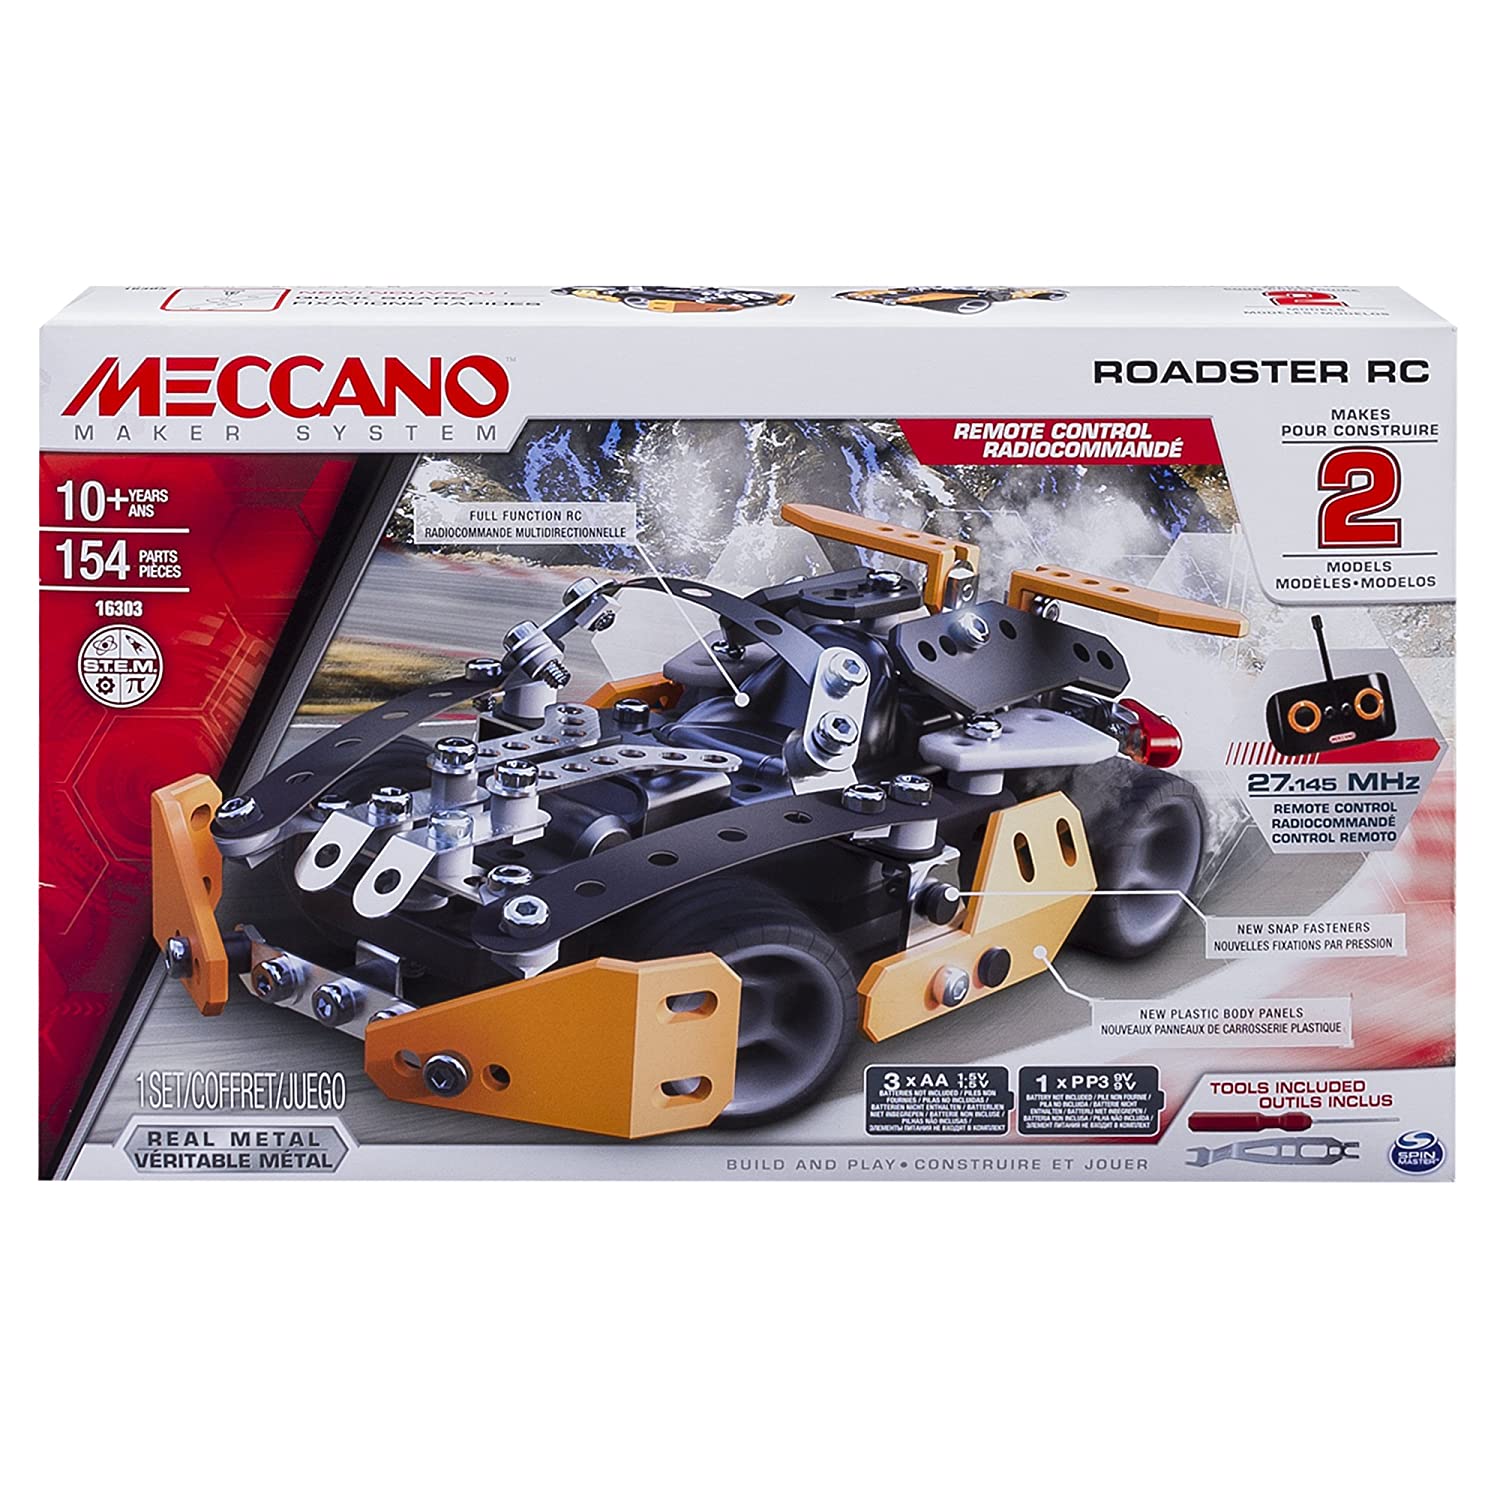 Meccano Erector Roadster RC Model Building Set